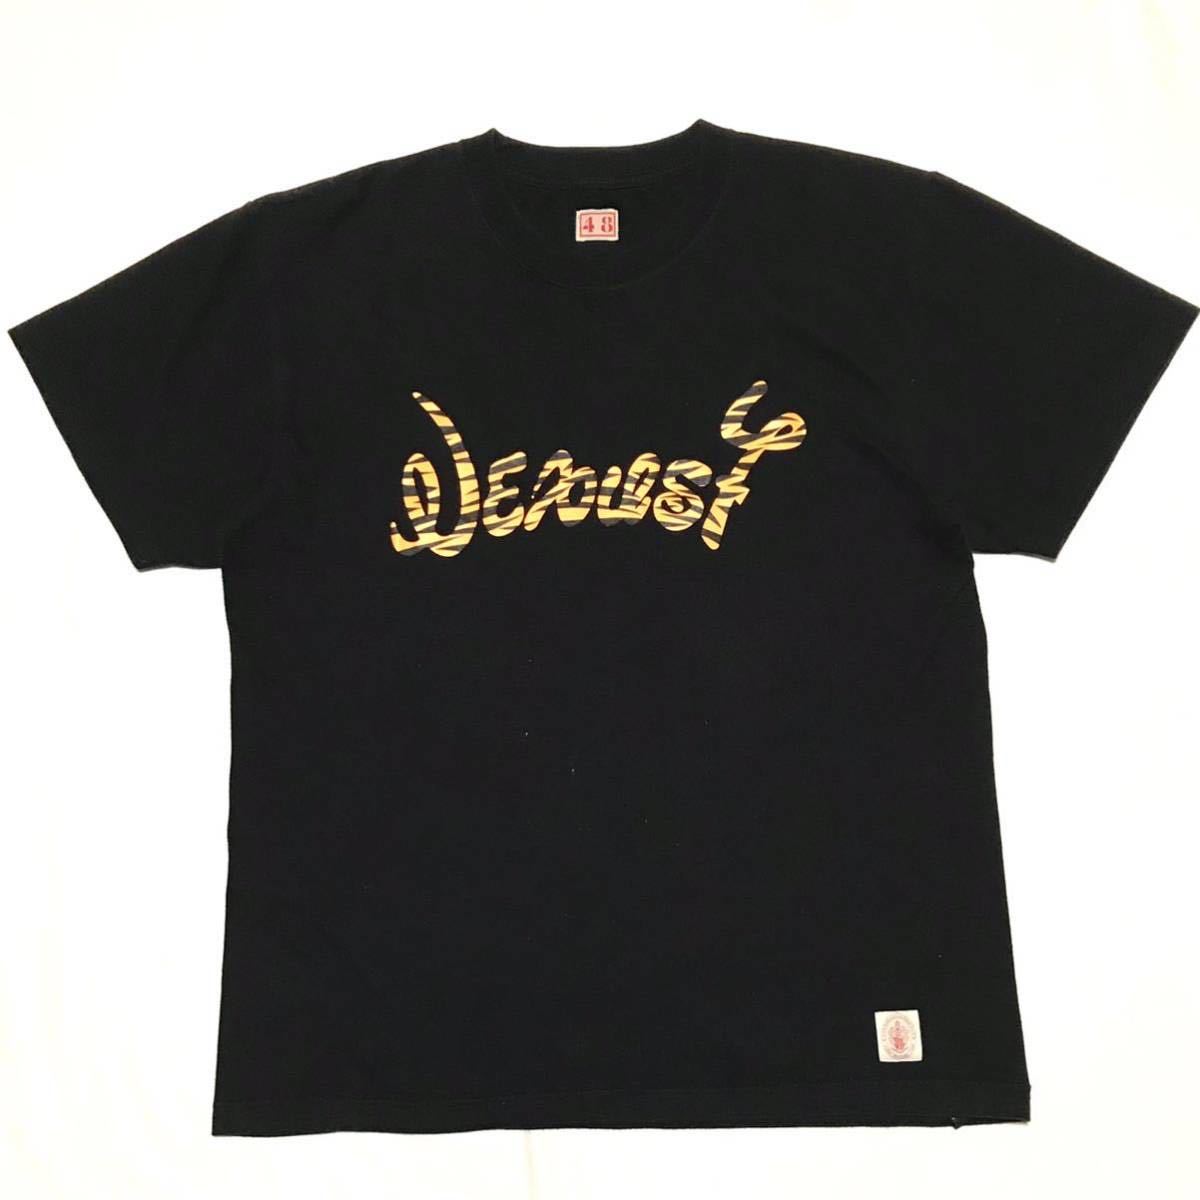 【NEXUSⅦ】ネクサス7 タイガーロゴ グラフィック Tシャツ メンズ48/L ブラック 黒 コットン 半袖Tee トラ 両面プリント USED 古着 正規品の画像1